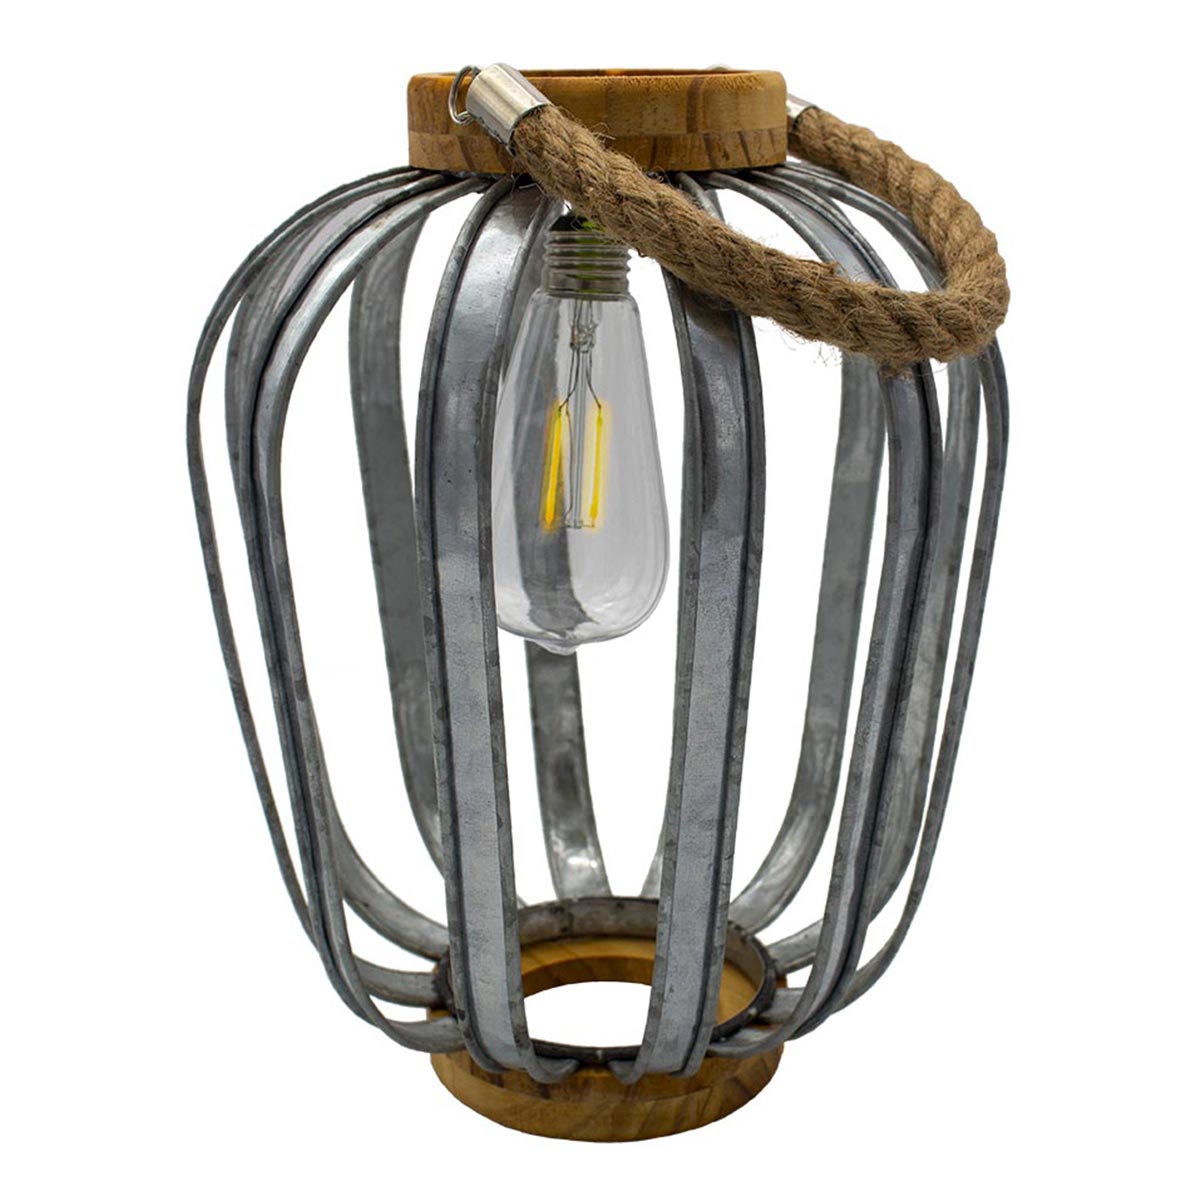 Lanterne solaire bohème en bois et acier galva poignée corde ampoule filament LED blanc chaud JAVA H45cm - REDDECO.com